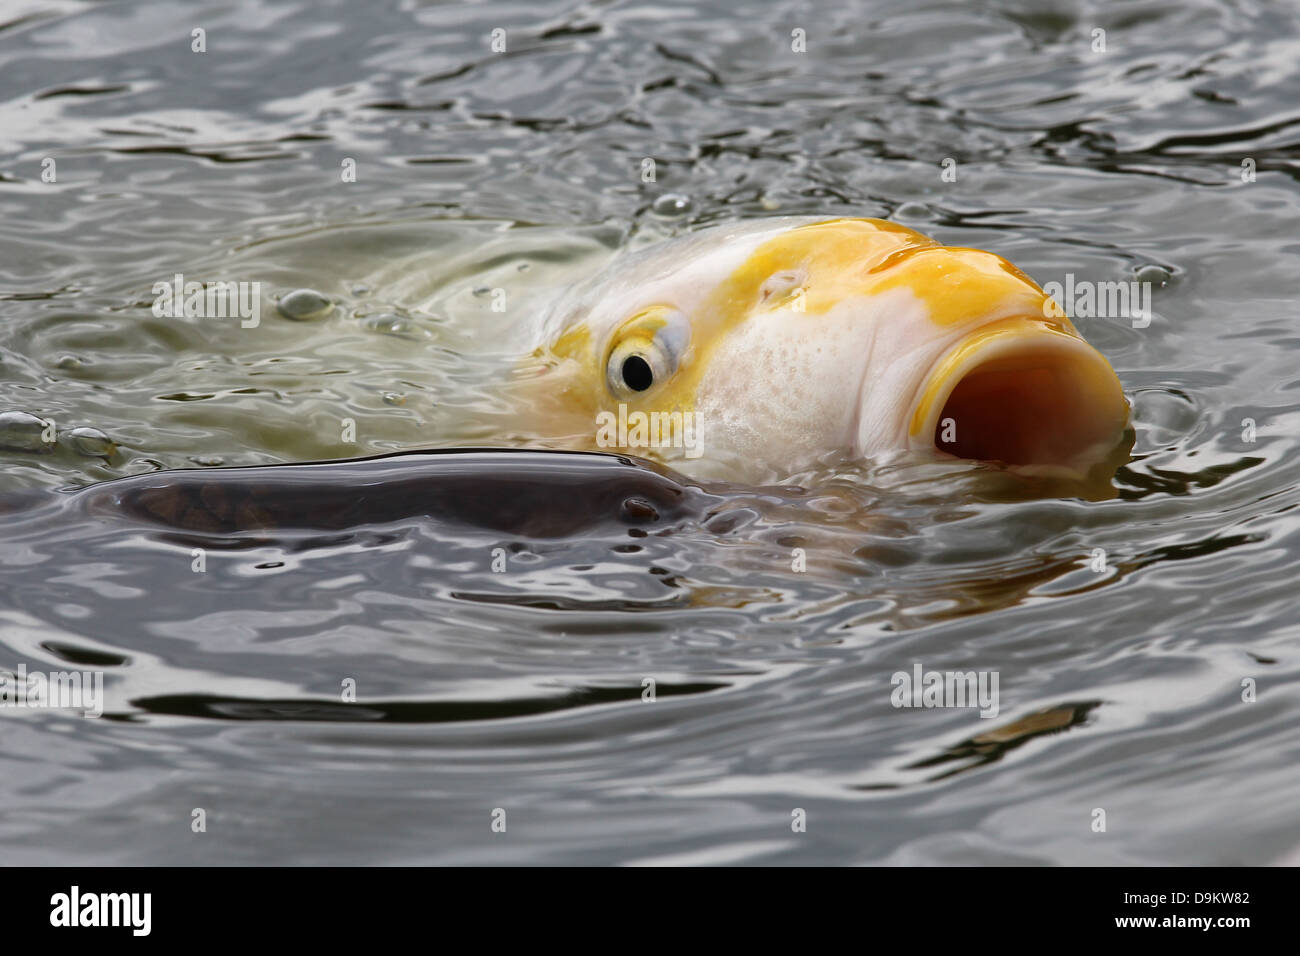 La carpe d'or poissons nager avec la tête hors de l'eau dans le lac, la bouche grande ouverte et visible de l'œil Banque D'Images